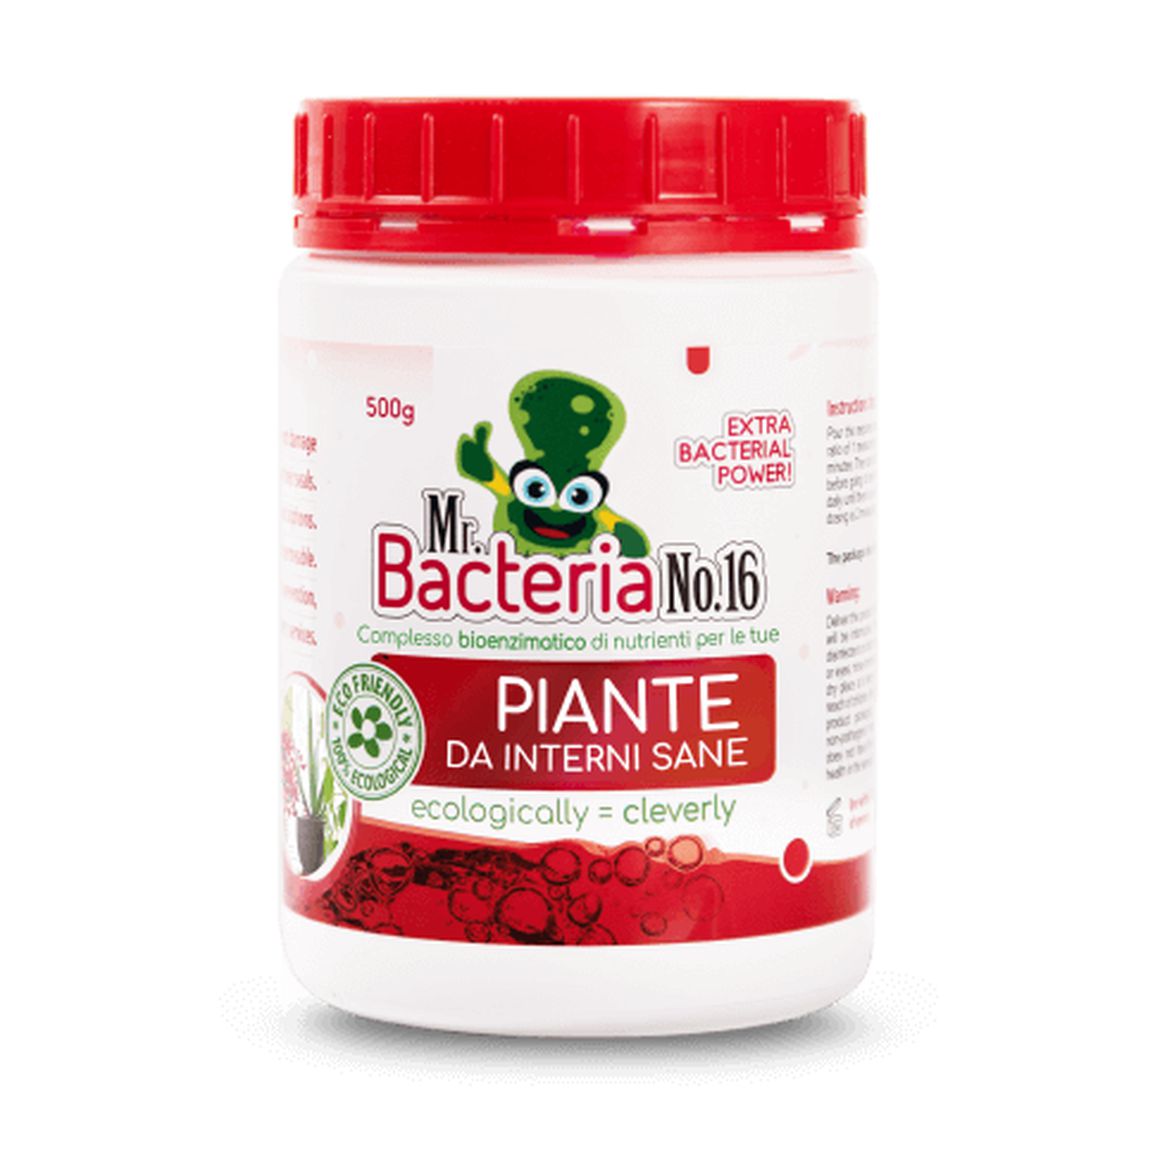 Mr. Bacteria No.16 Complesso bioenzimatico di nutrienti per le tue